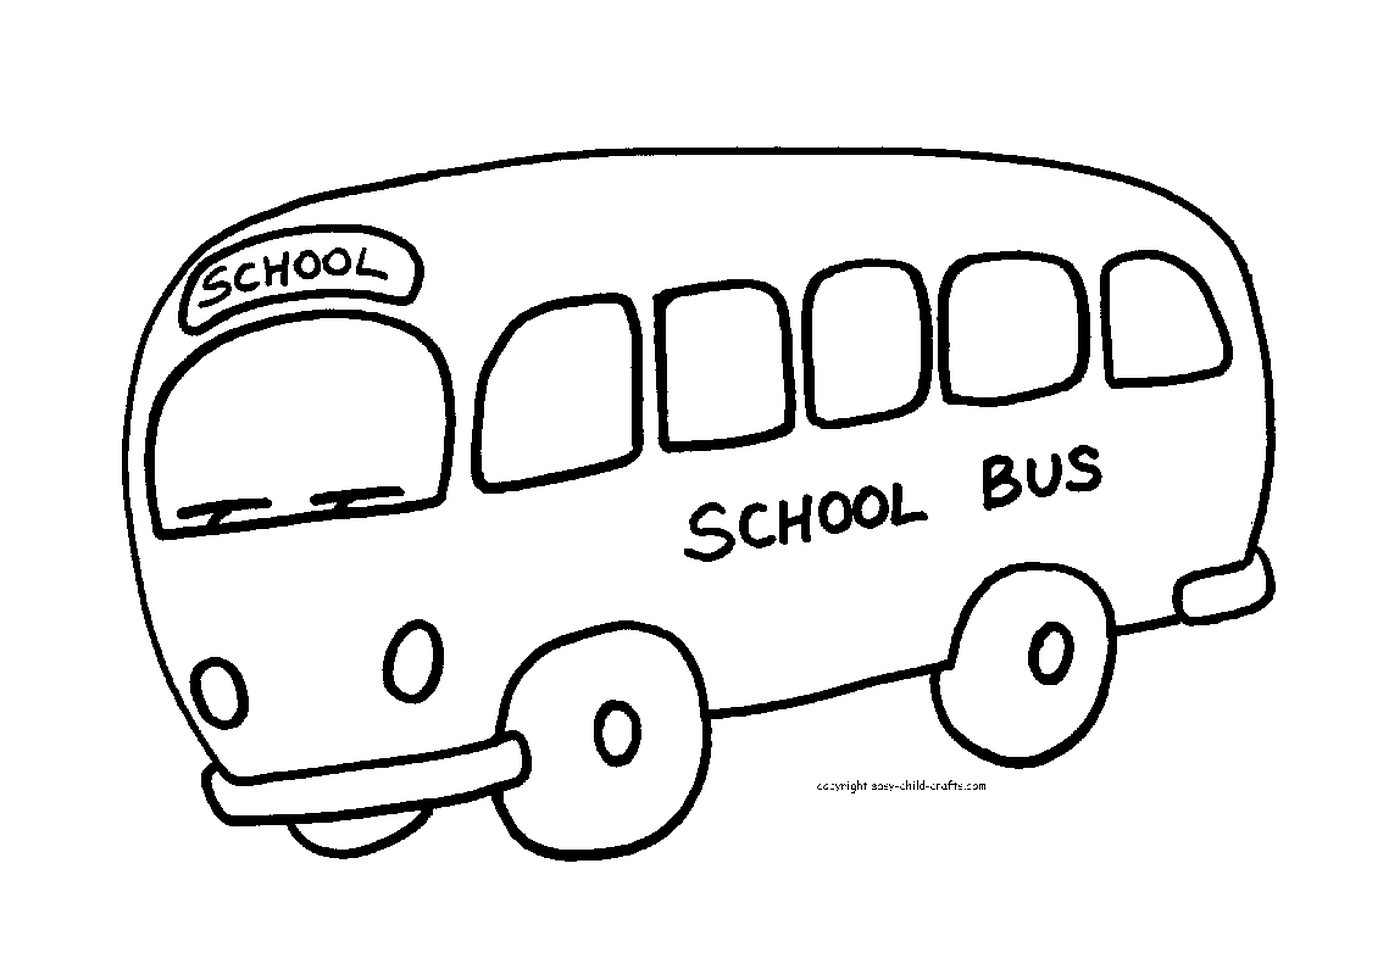  حافلة مدرسية على استعداد للترحيب بالتلاميذ 